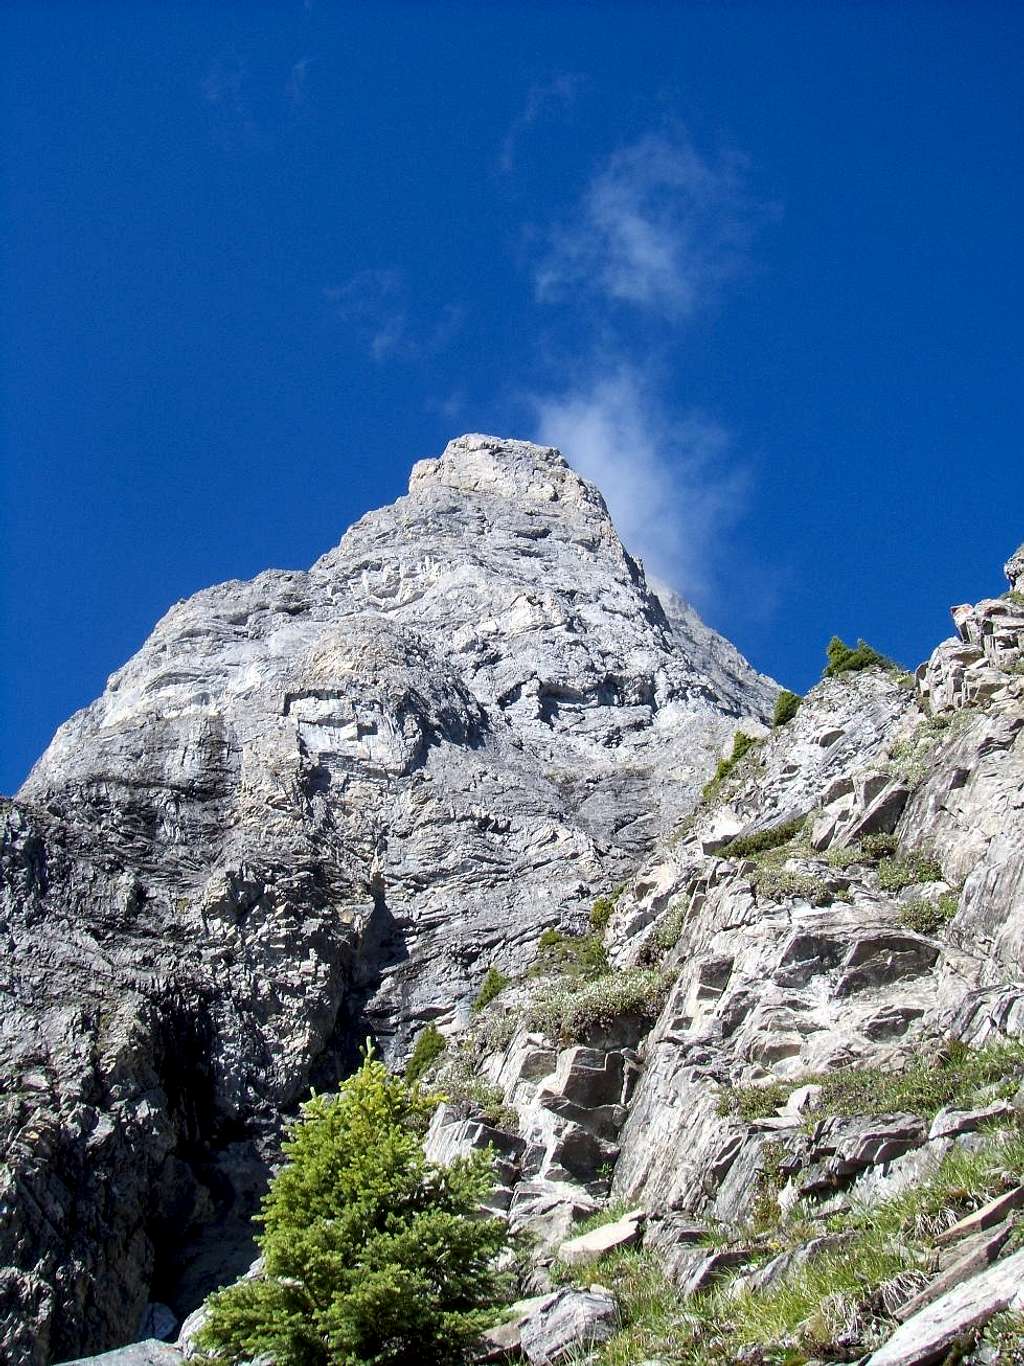 Mount Sarrail